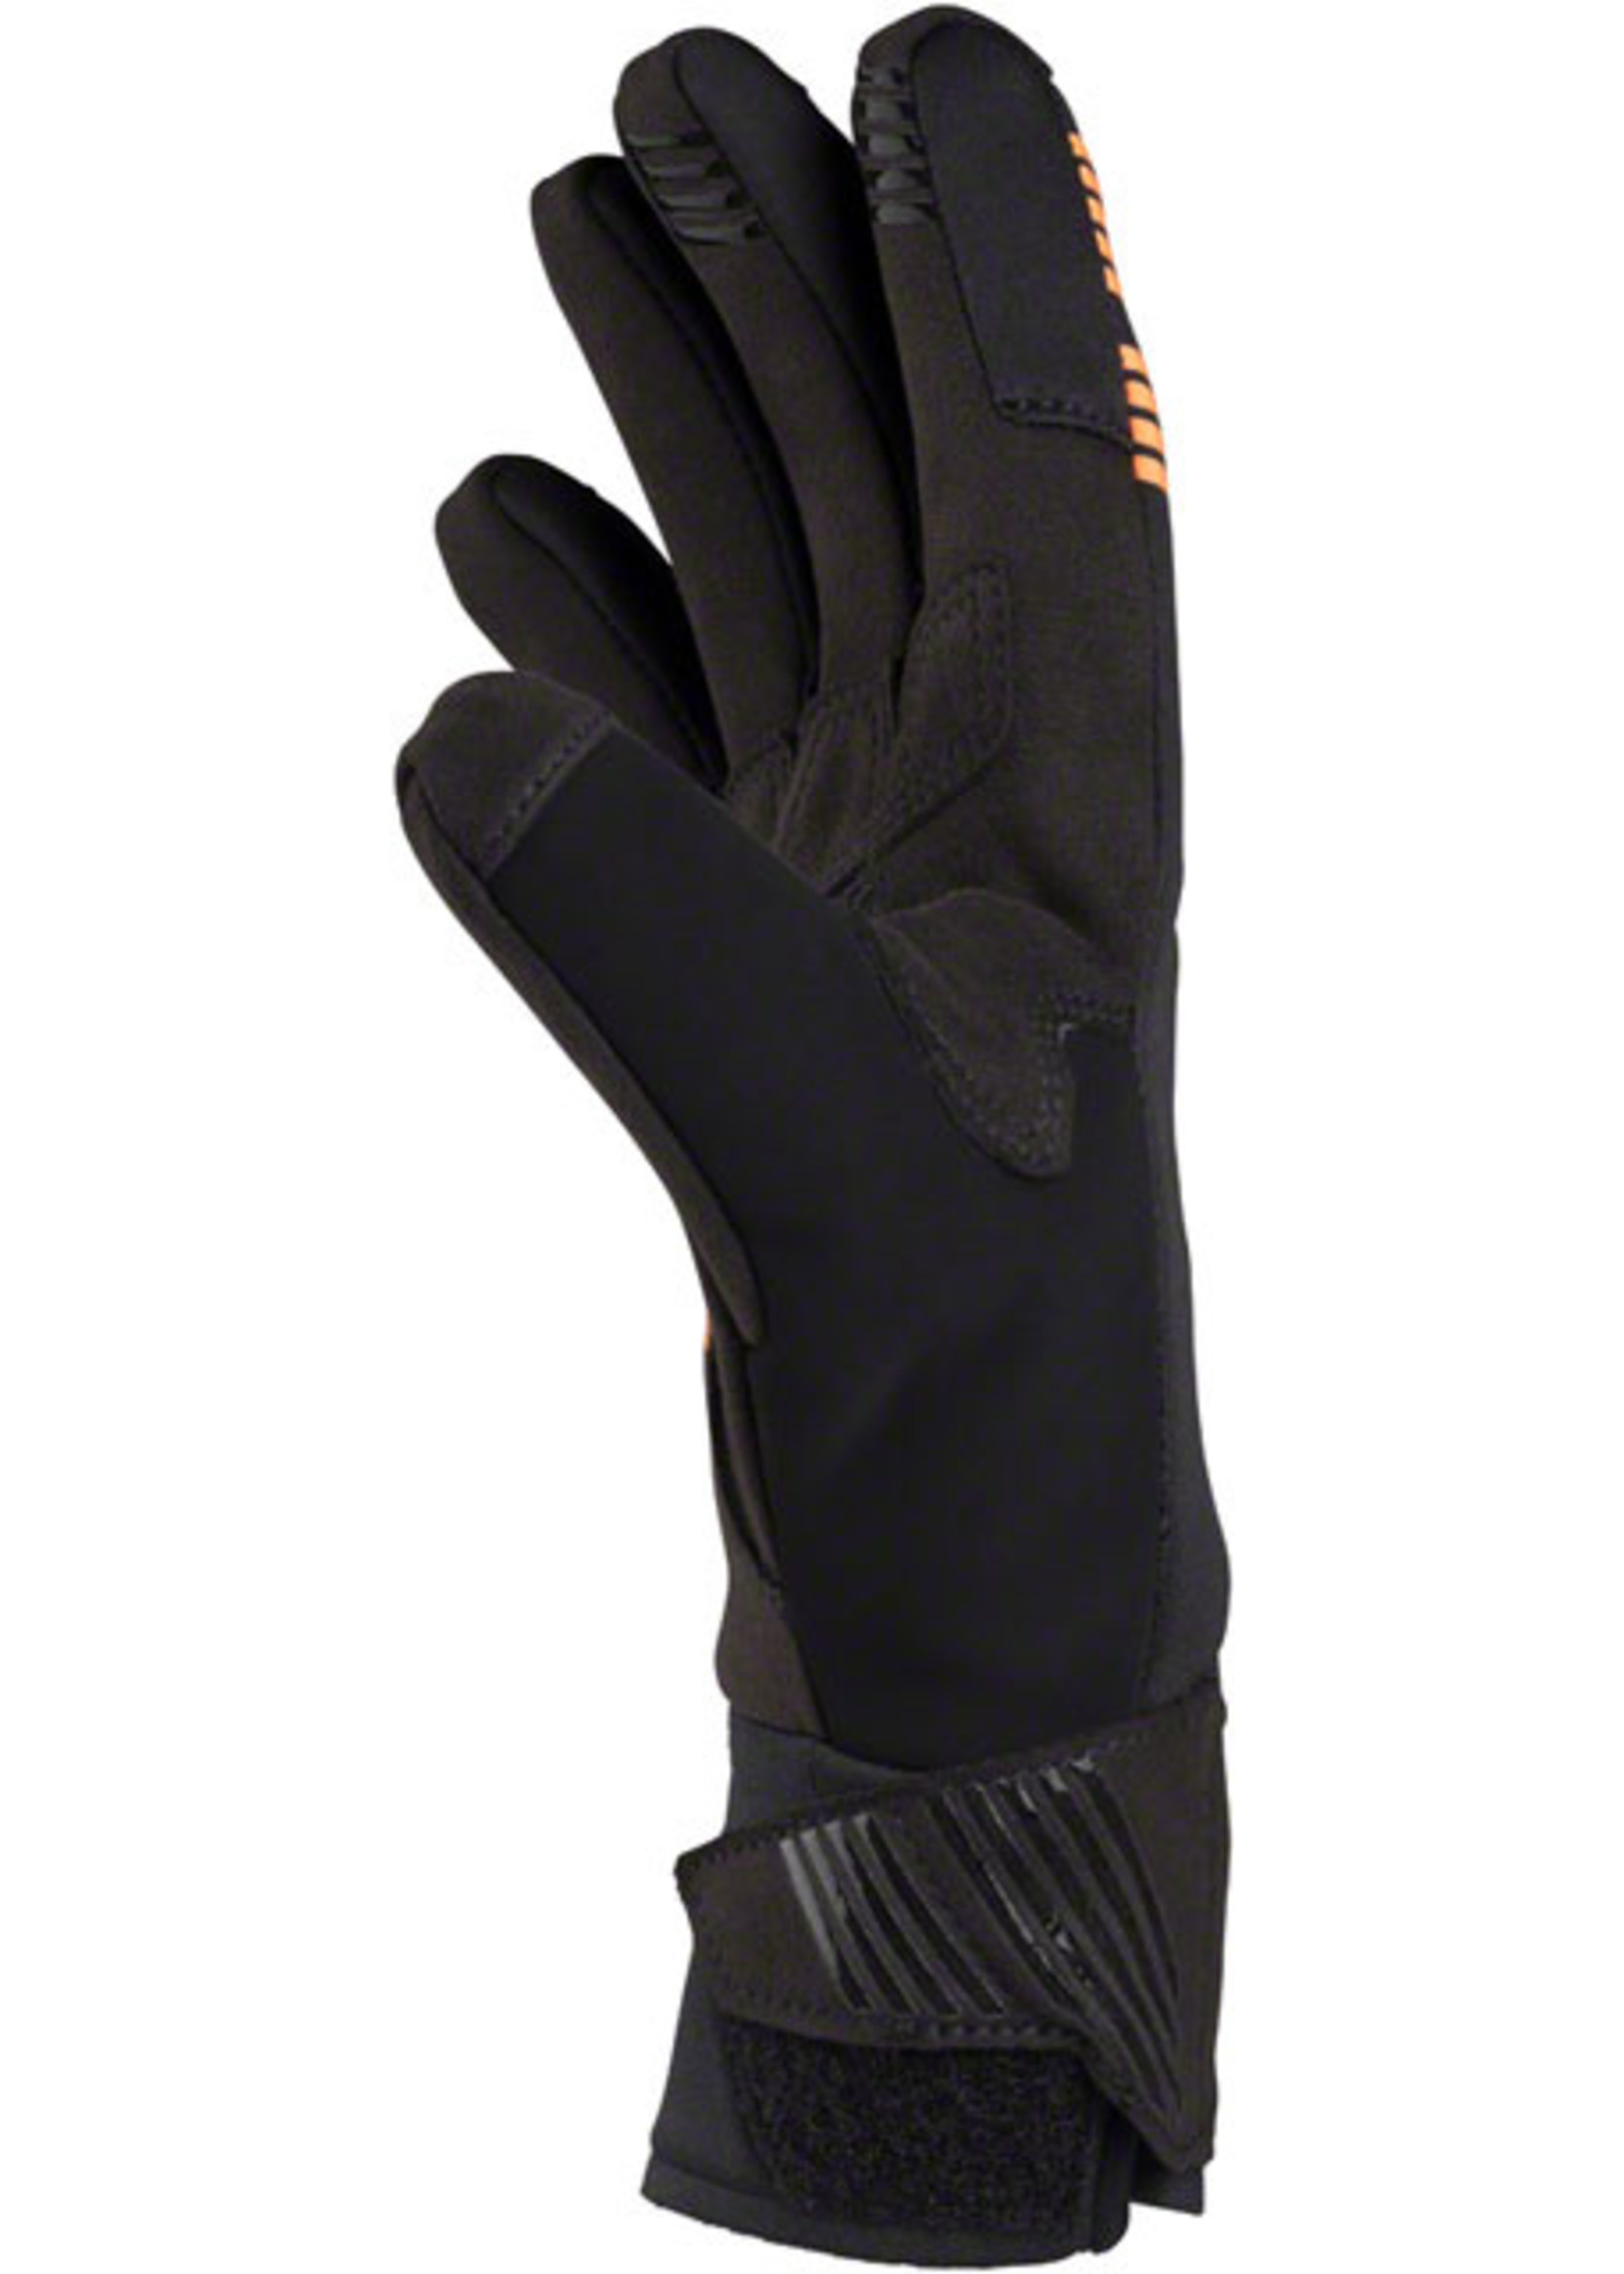 45NRTH 45NRTH Nokken Glove - Black Full Finger X-Large (10)